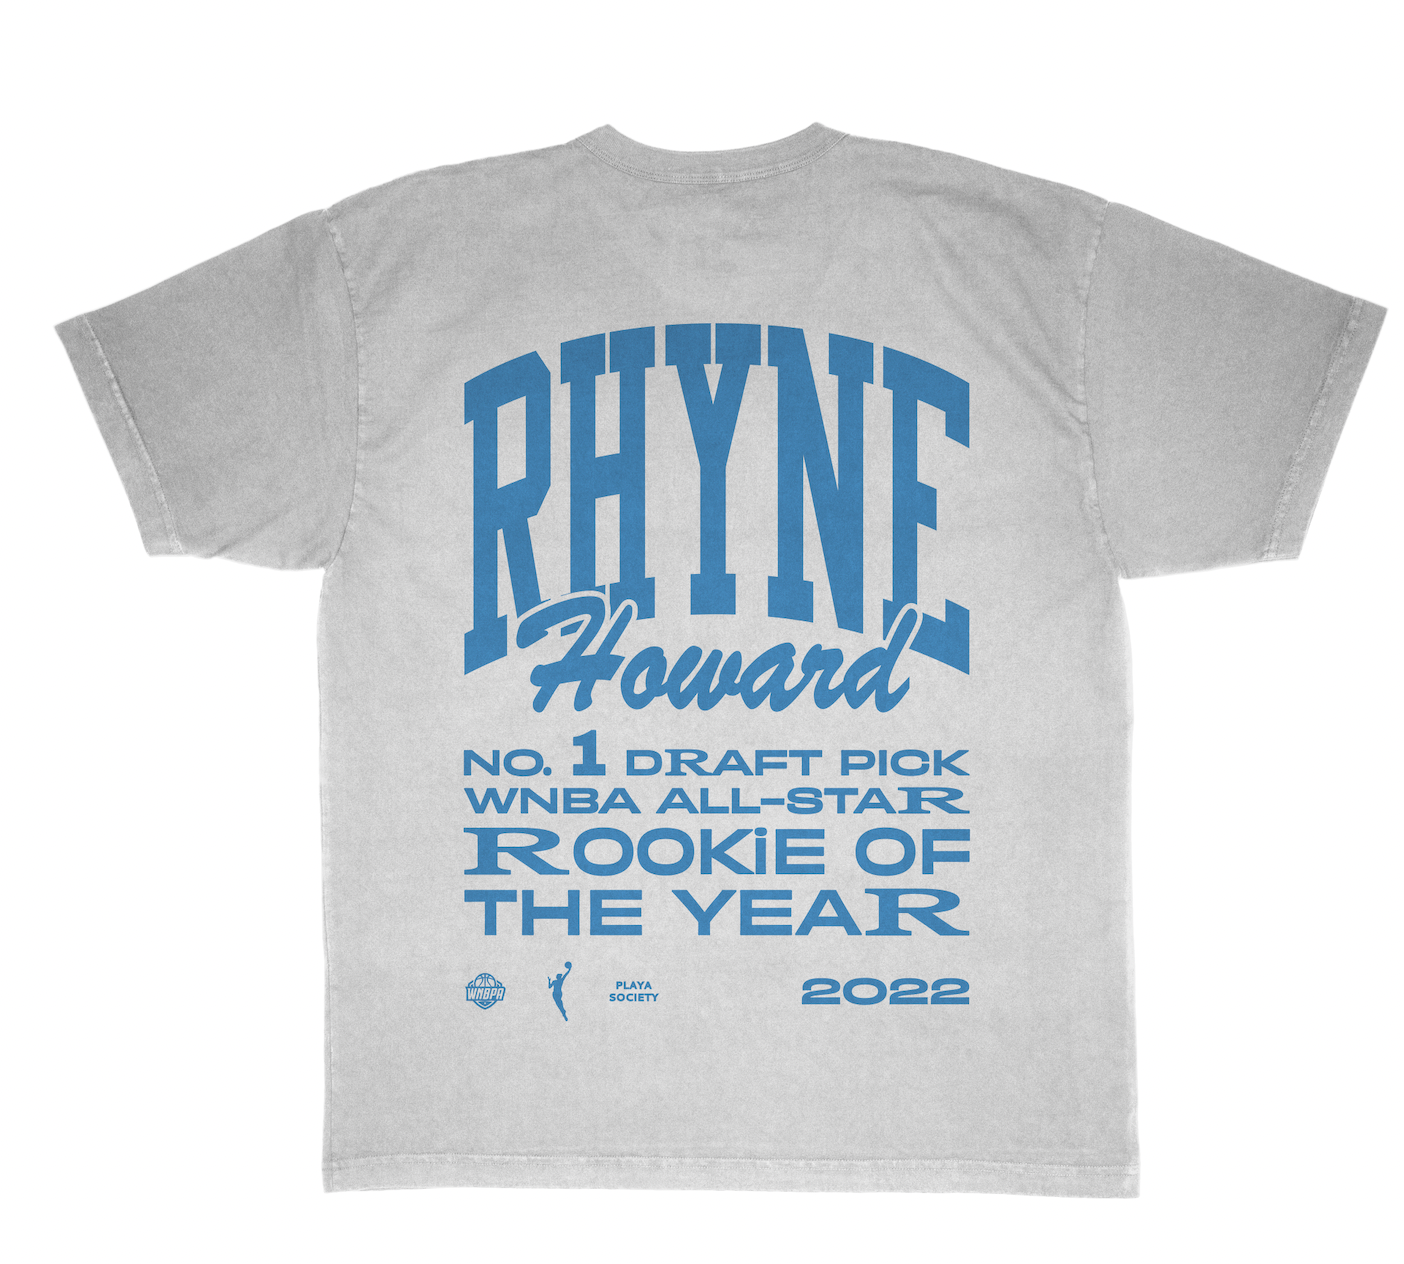 WNBA Rhyne Howard ROY T-shirt